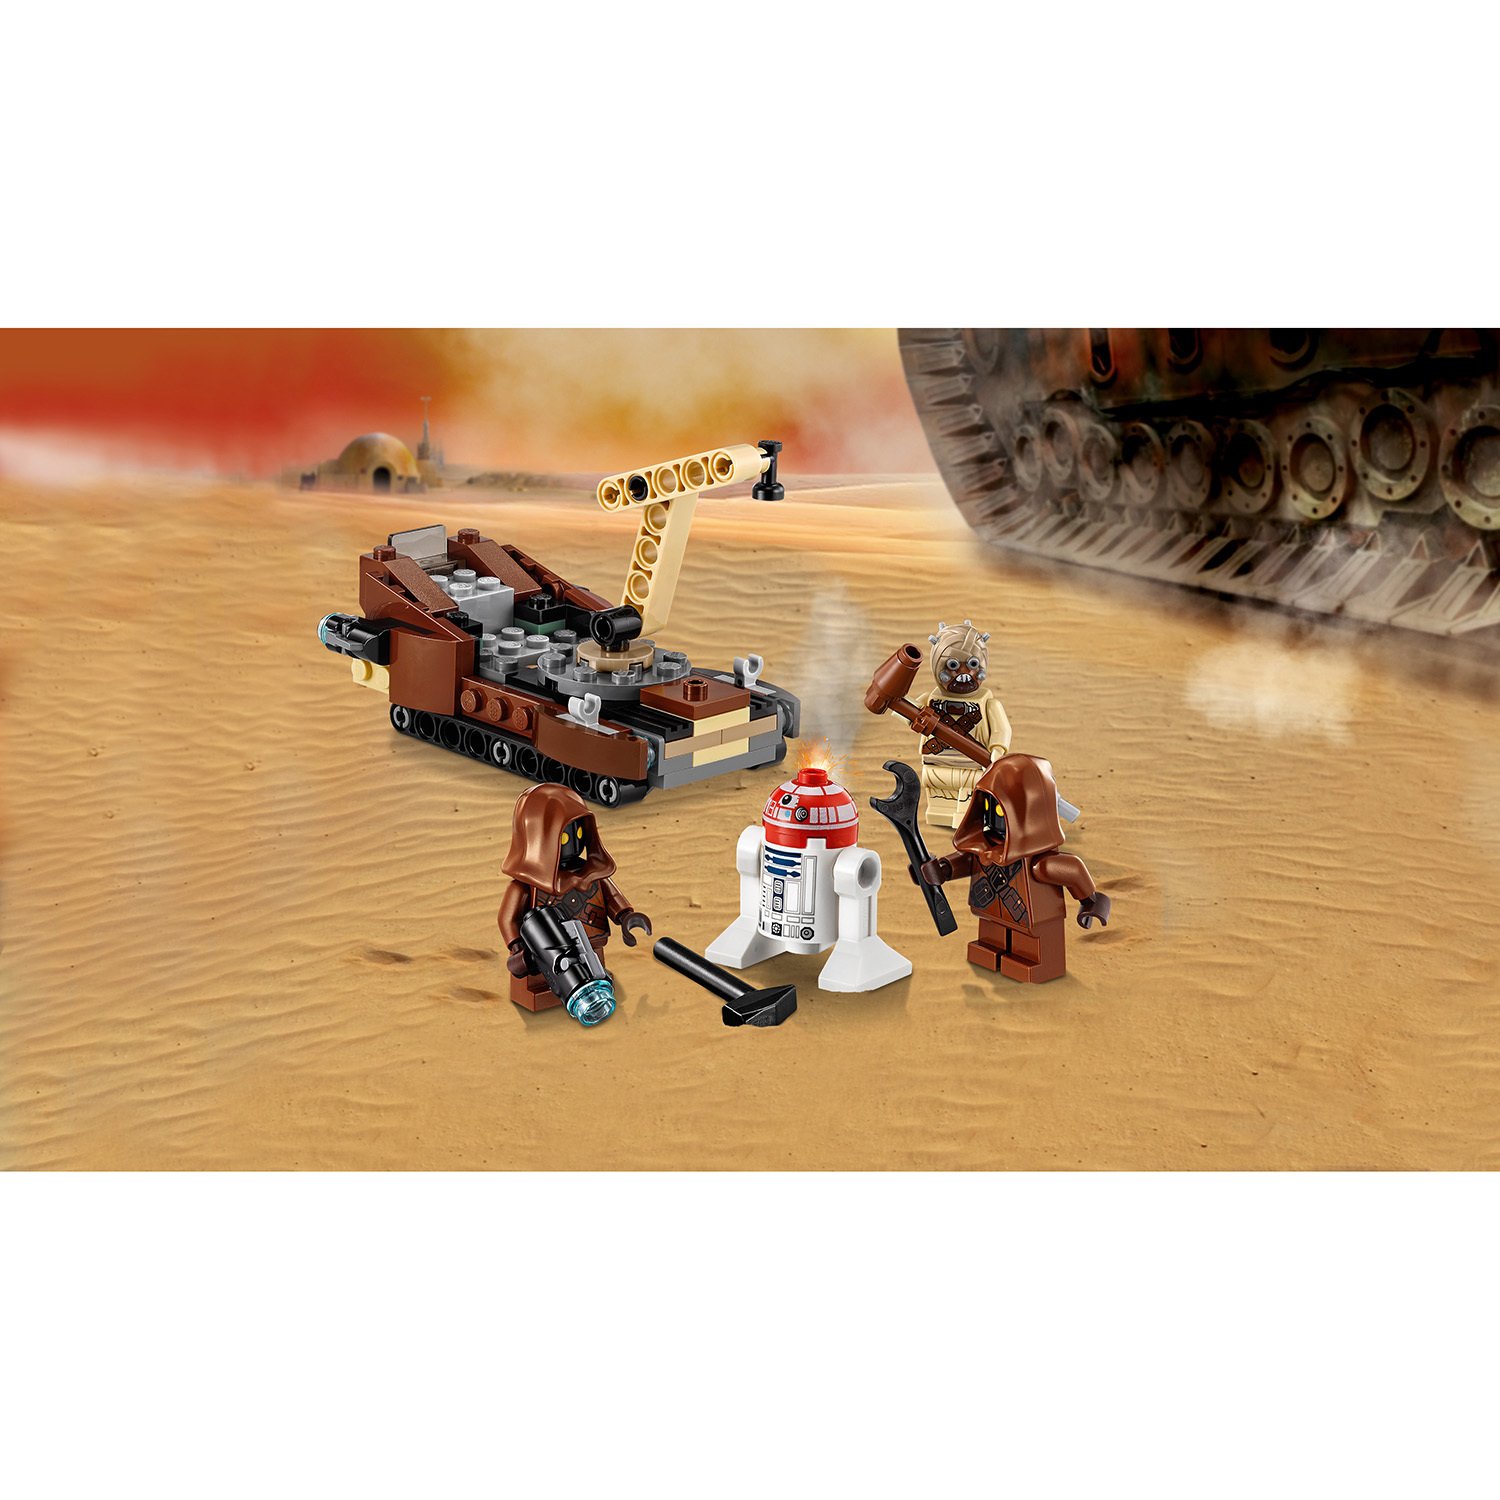 Конструктор Lego Star Wars - Боевой набор планеты Татуин  